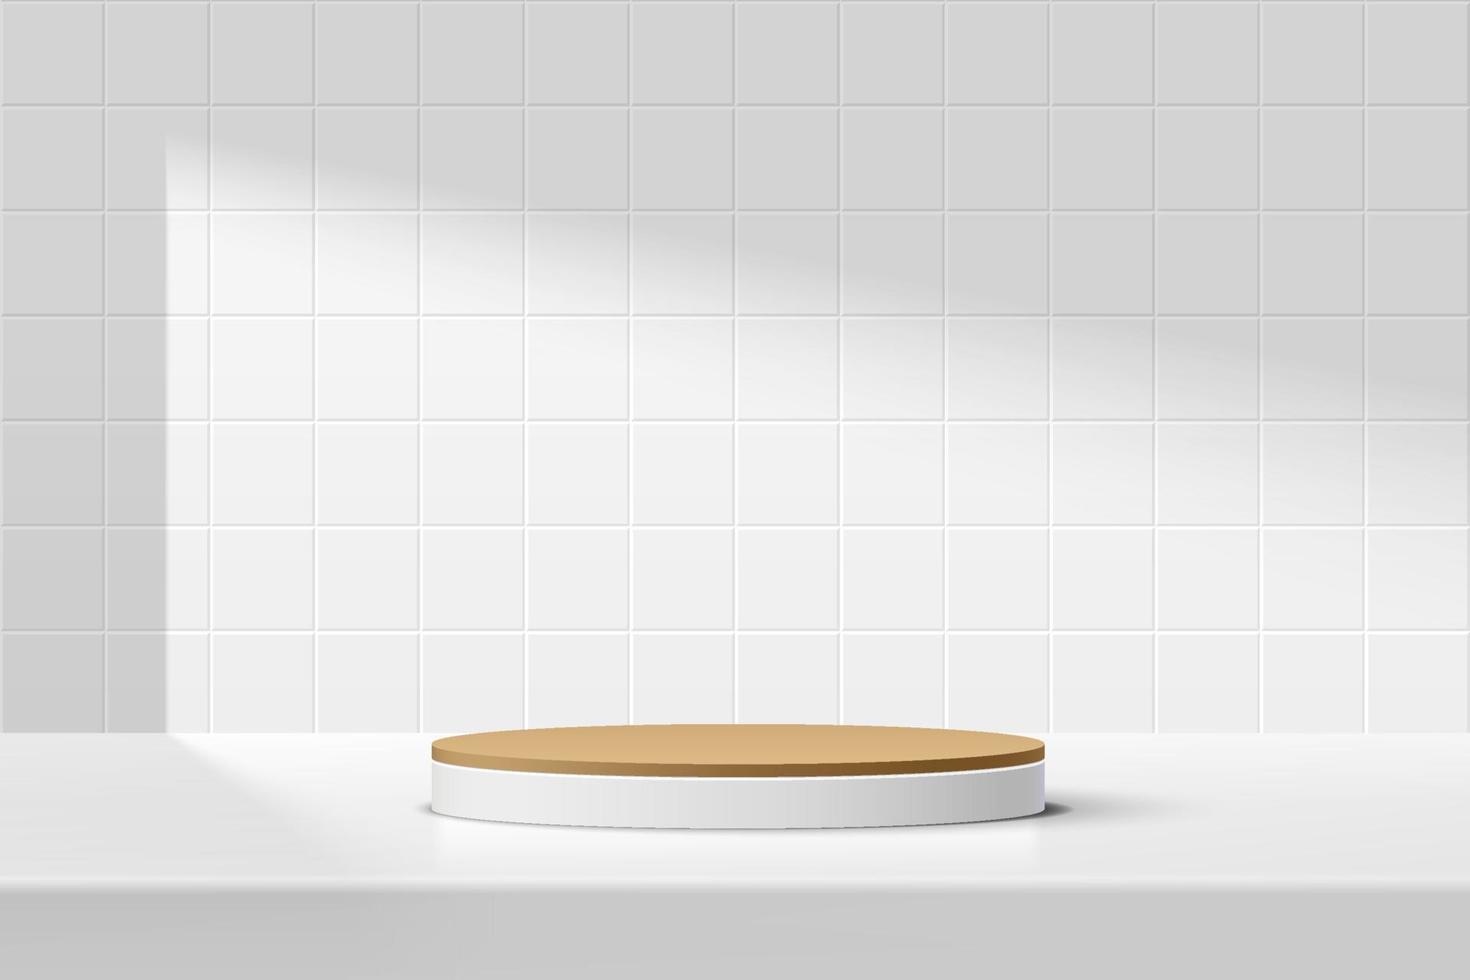 abstraktes 3d weißes, braunes zylindersockelpodium auf dem tisch mit weißer quadratischer fliesenbeschaffenheitswandszene. vektor, der minimales geometrisches plattformdesign im schatten für die präsentation der produktpräsentation darstellt. vektor